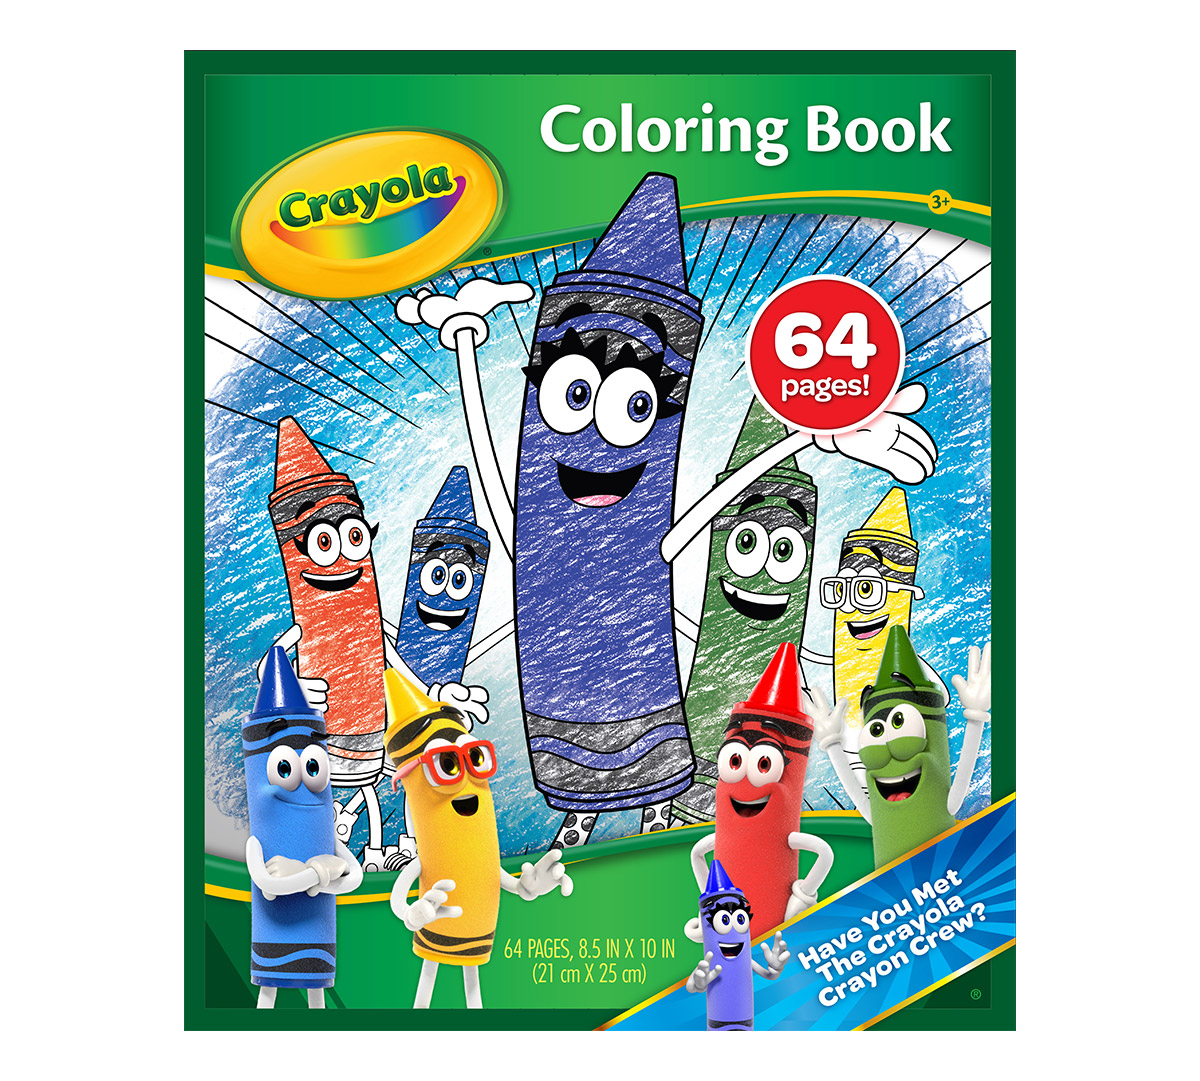 Crayola Crayon Coloring Book for Kids   Crayola.com   Crayola